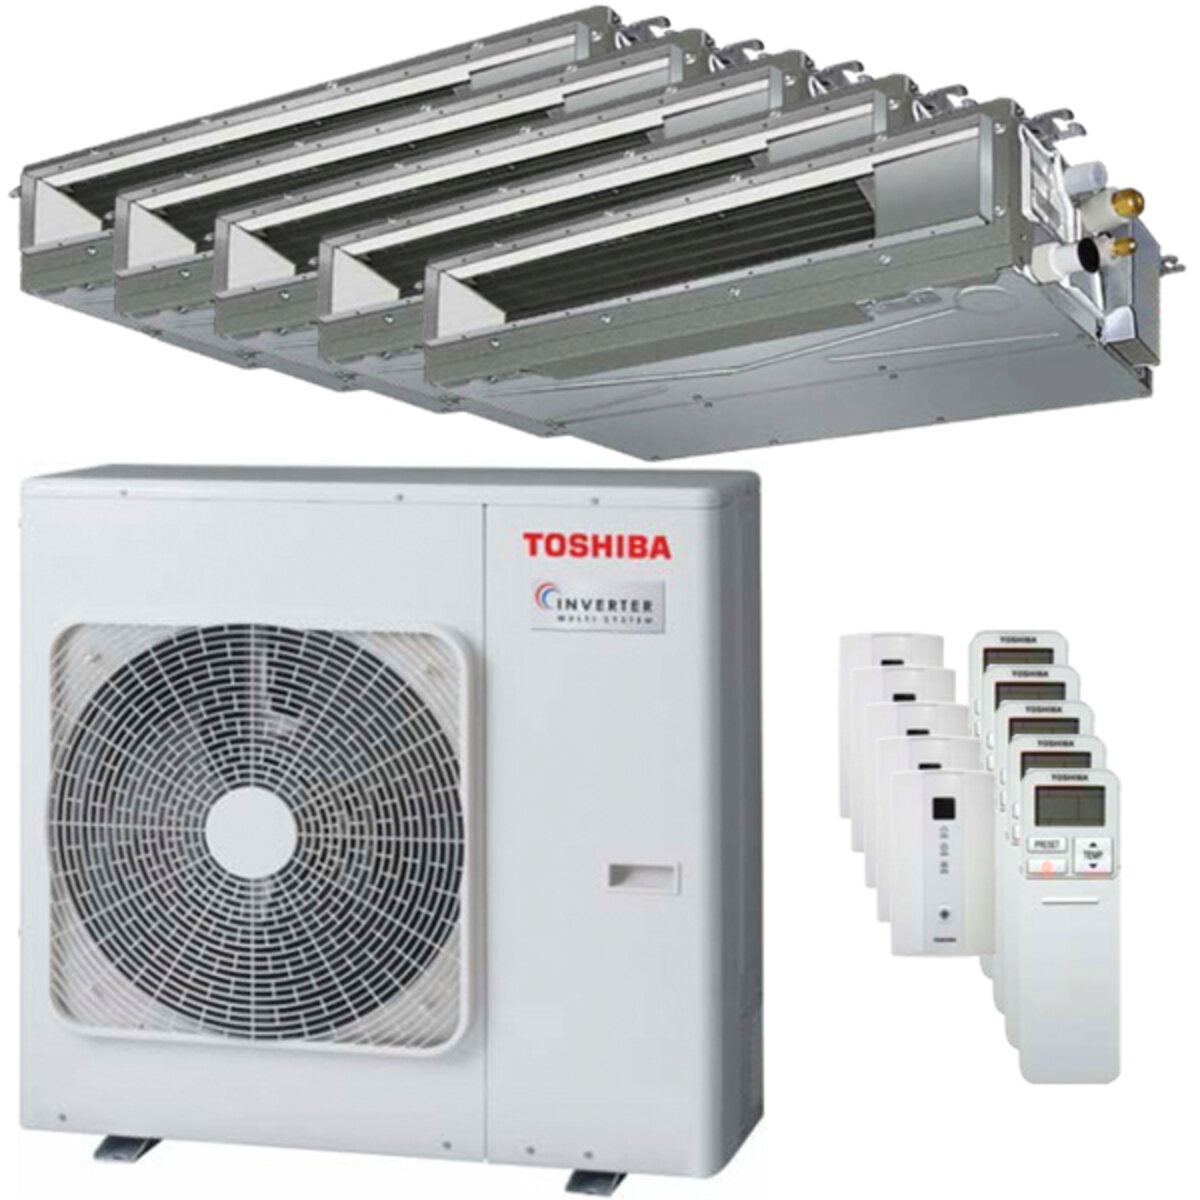 Toshiba Ductable U2 Klimaanlage Pentasplit 9000 + 9000 + 9000 + 12000 + 12000 BTU Inverter A++ Außengerät 10,0 kW